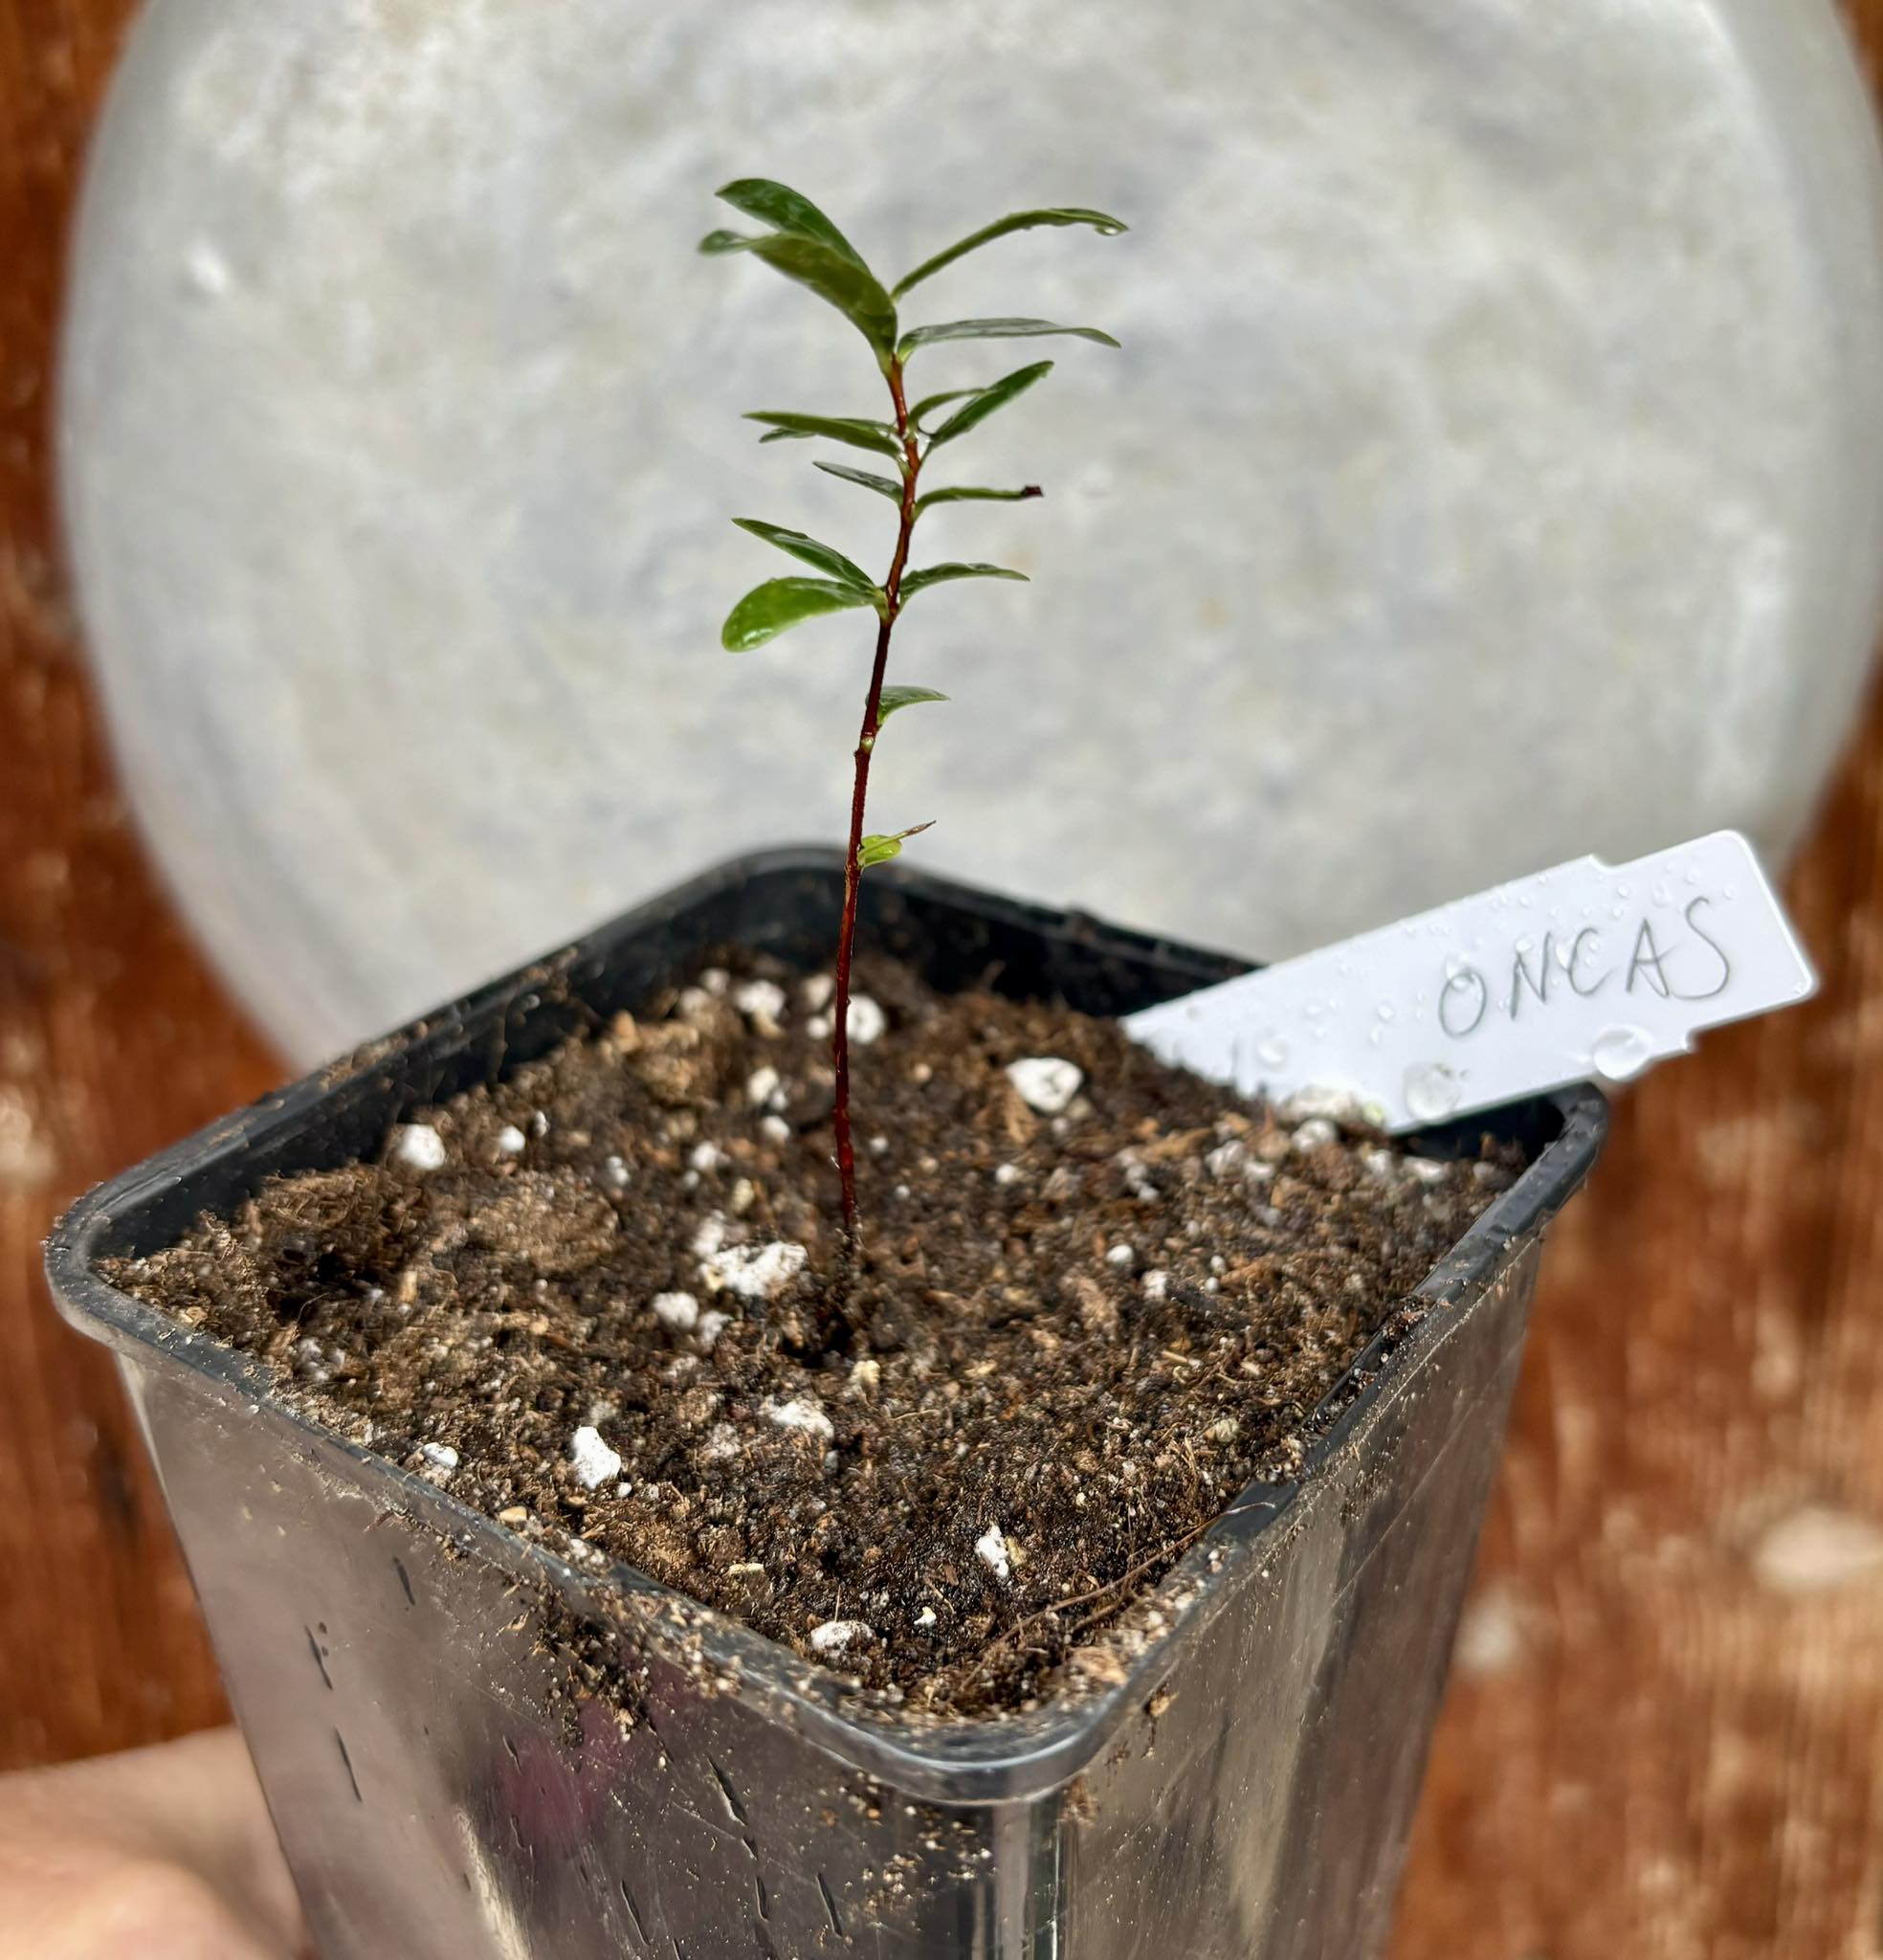 CEREJINHA DE JAGUARIÚNA - Eugenia punicifolia var. Oncas Doce - 1 potted plant / 1 getopfte Pflanze